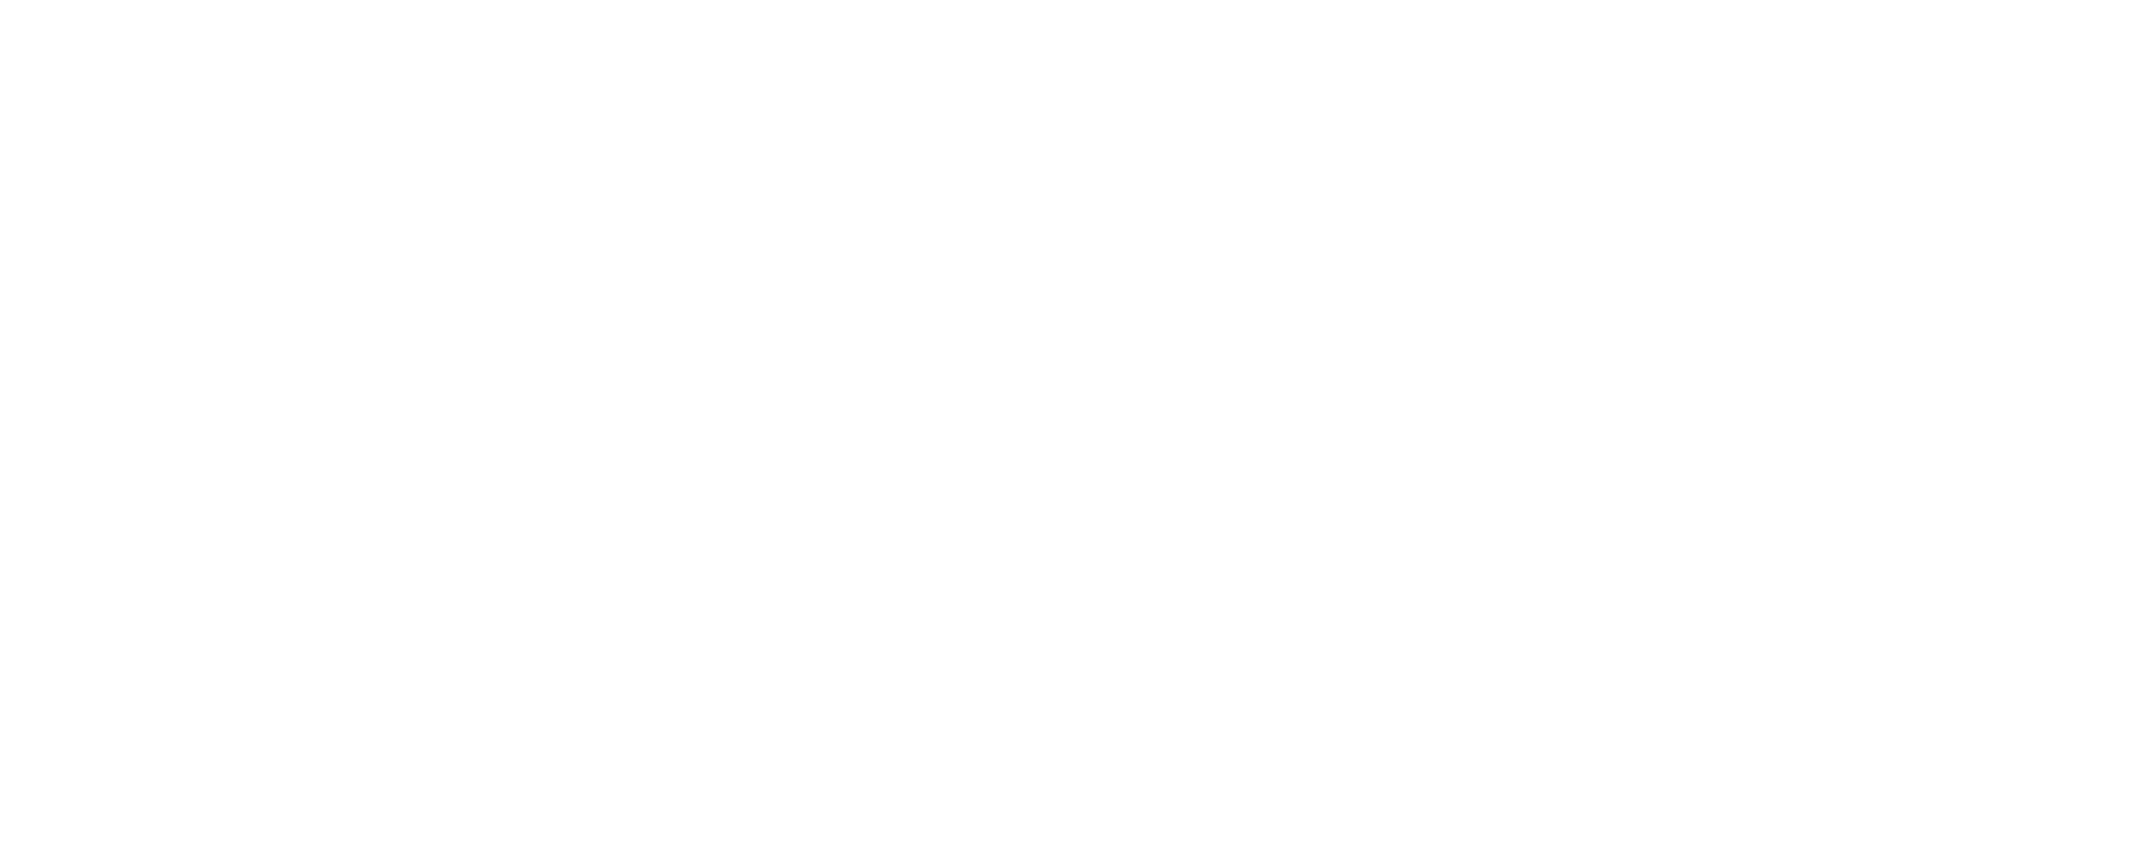 Adrien Cotton, Wellness Expert